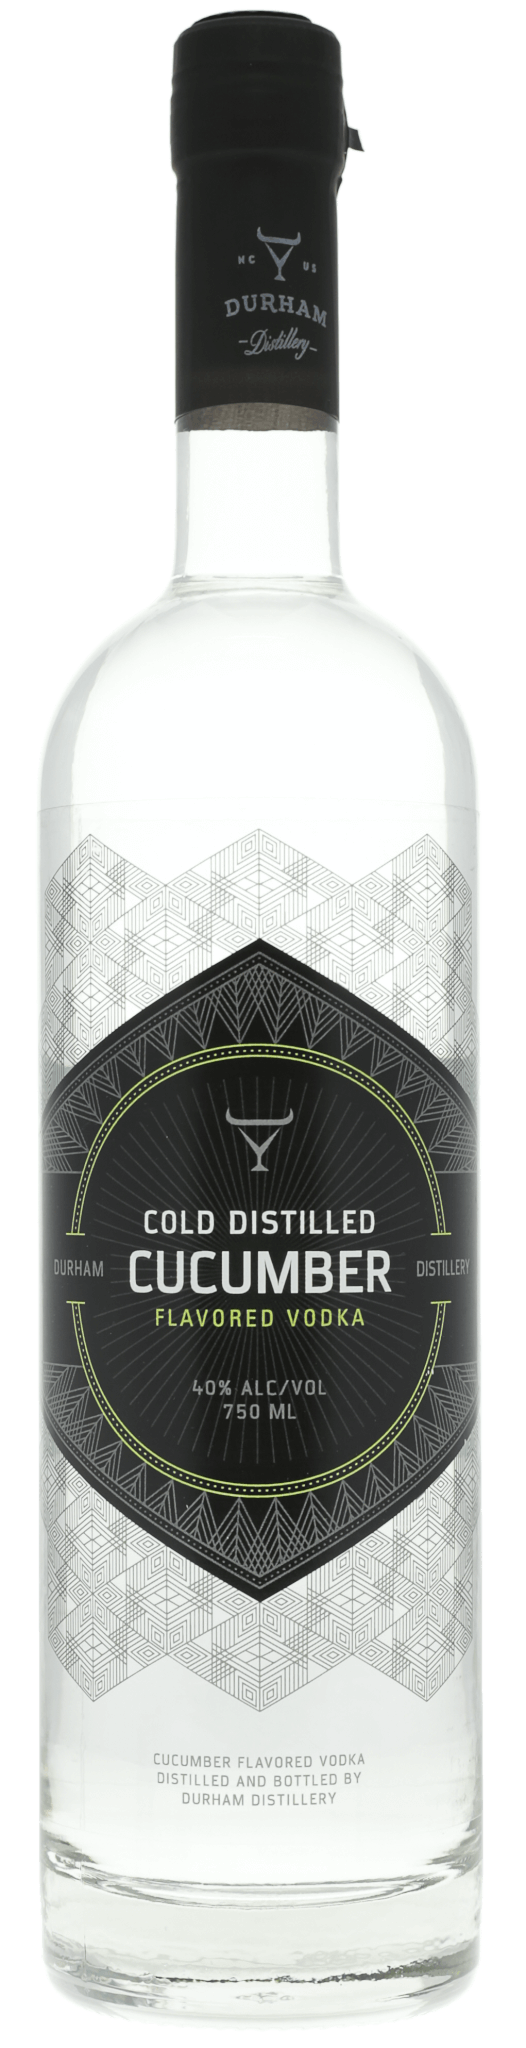 Durham Distillery Cucumber Vodka